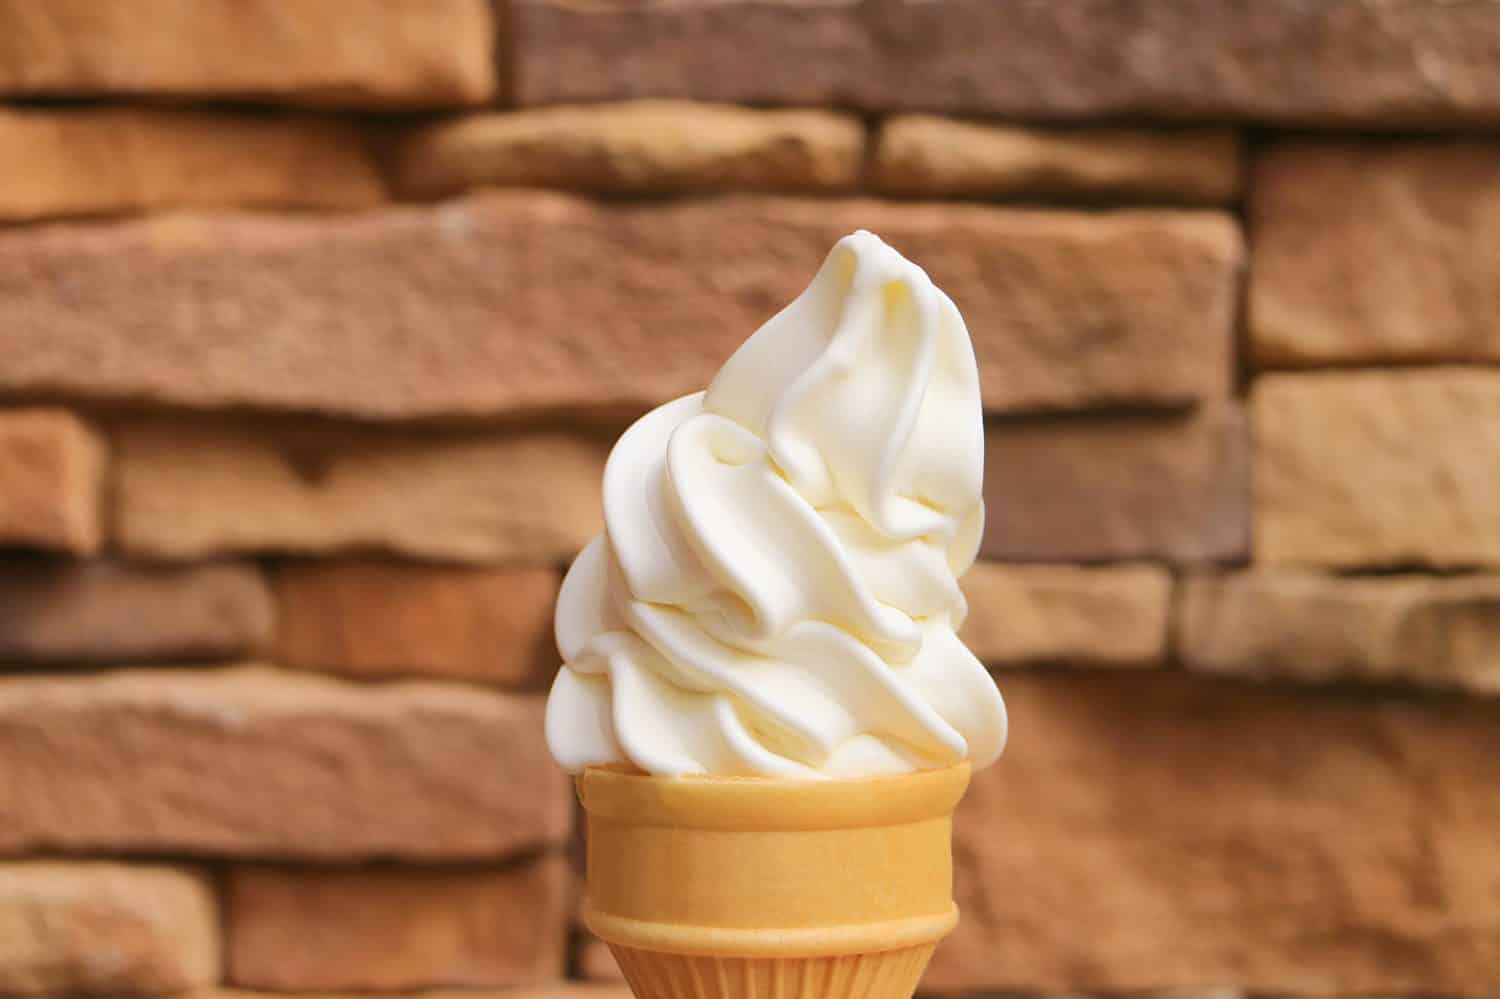 Delizioso cono gelato alla vaniglia con servizio morbido e parete bloccata in pietra sfocata sullo sfondo